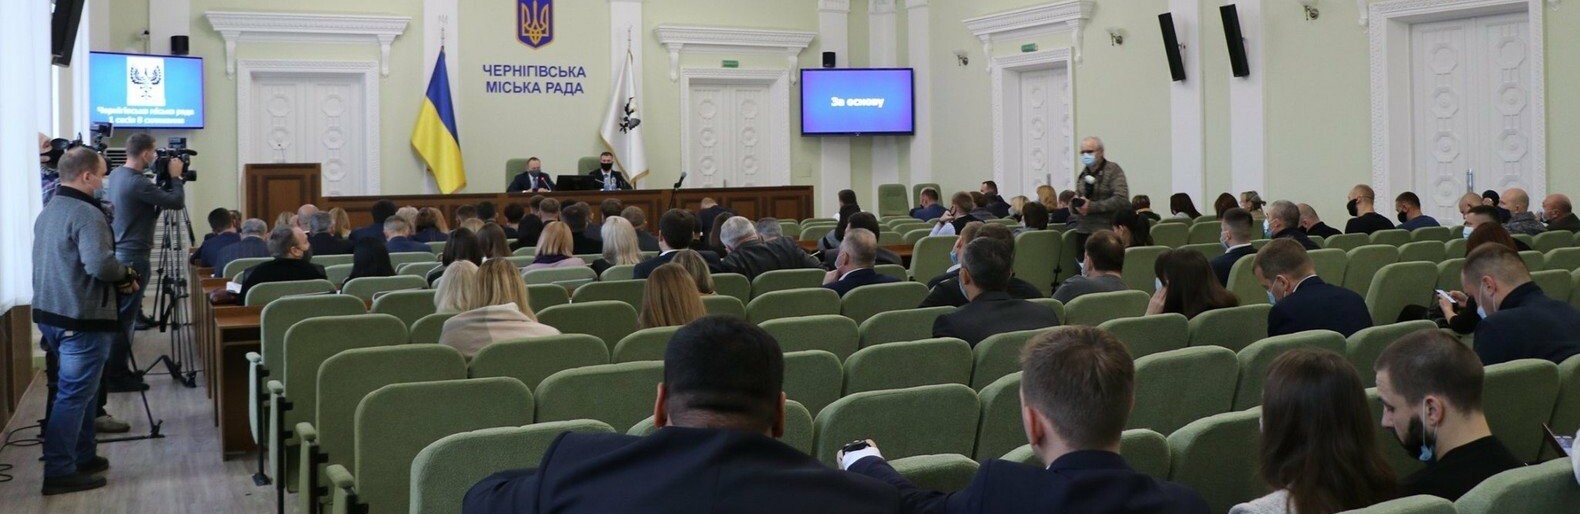 Депутати партії «Рідний дім» очолили 5 з 6 комісій Чернігівської міської ради